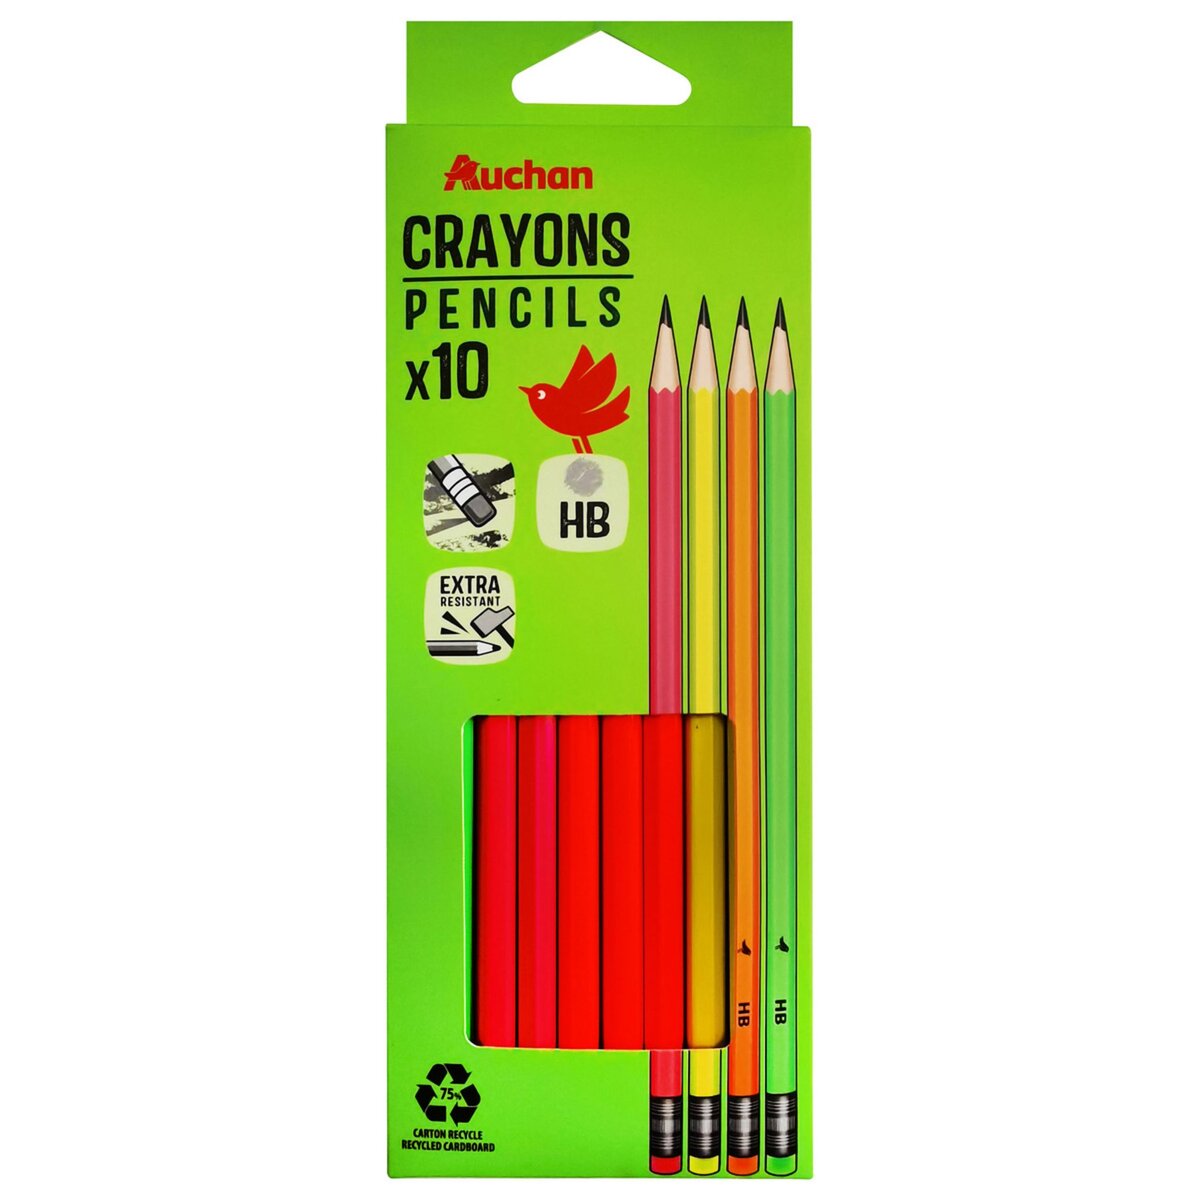 Crayon-gomme par 10